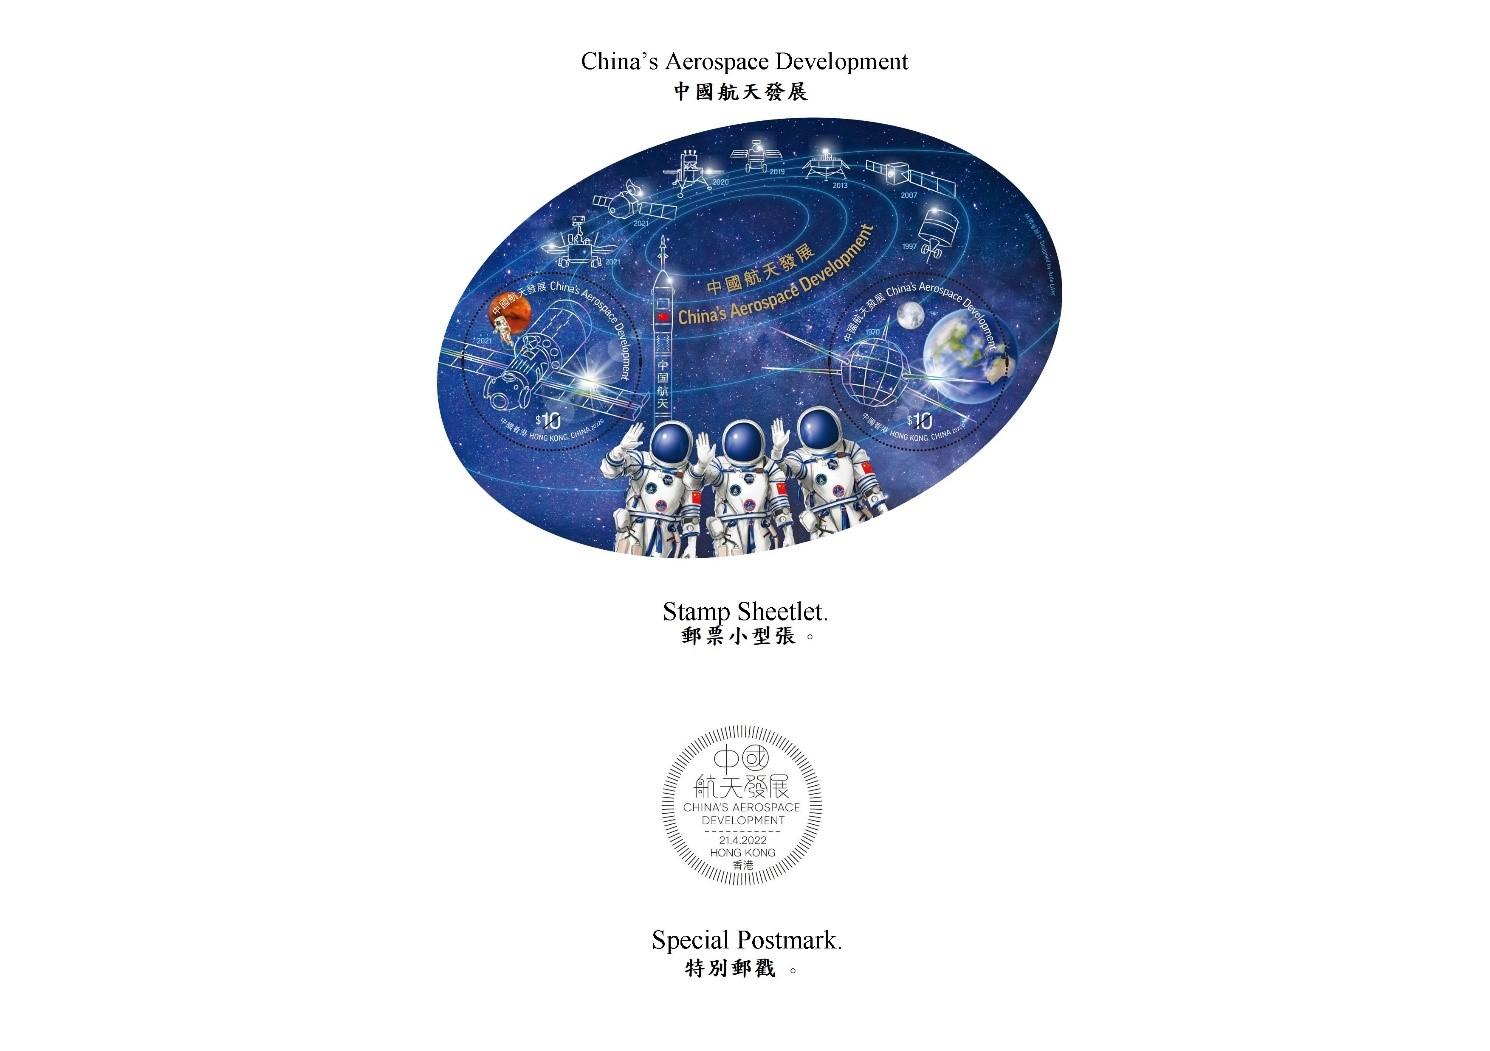 香港郵政四月二十一日（星期四）發行以「中國航天發展」為題的特別郵票及相關集郵品。圖示郵票小型張和特別郵戳。